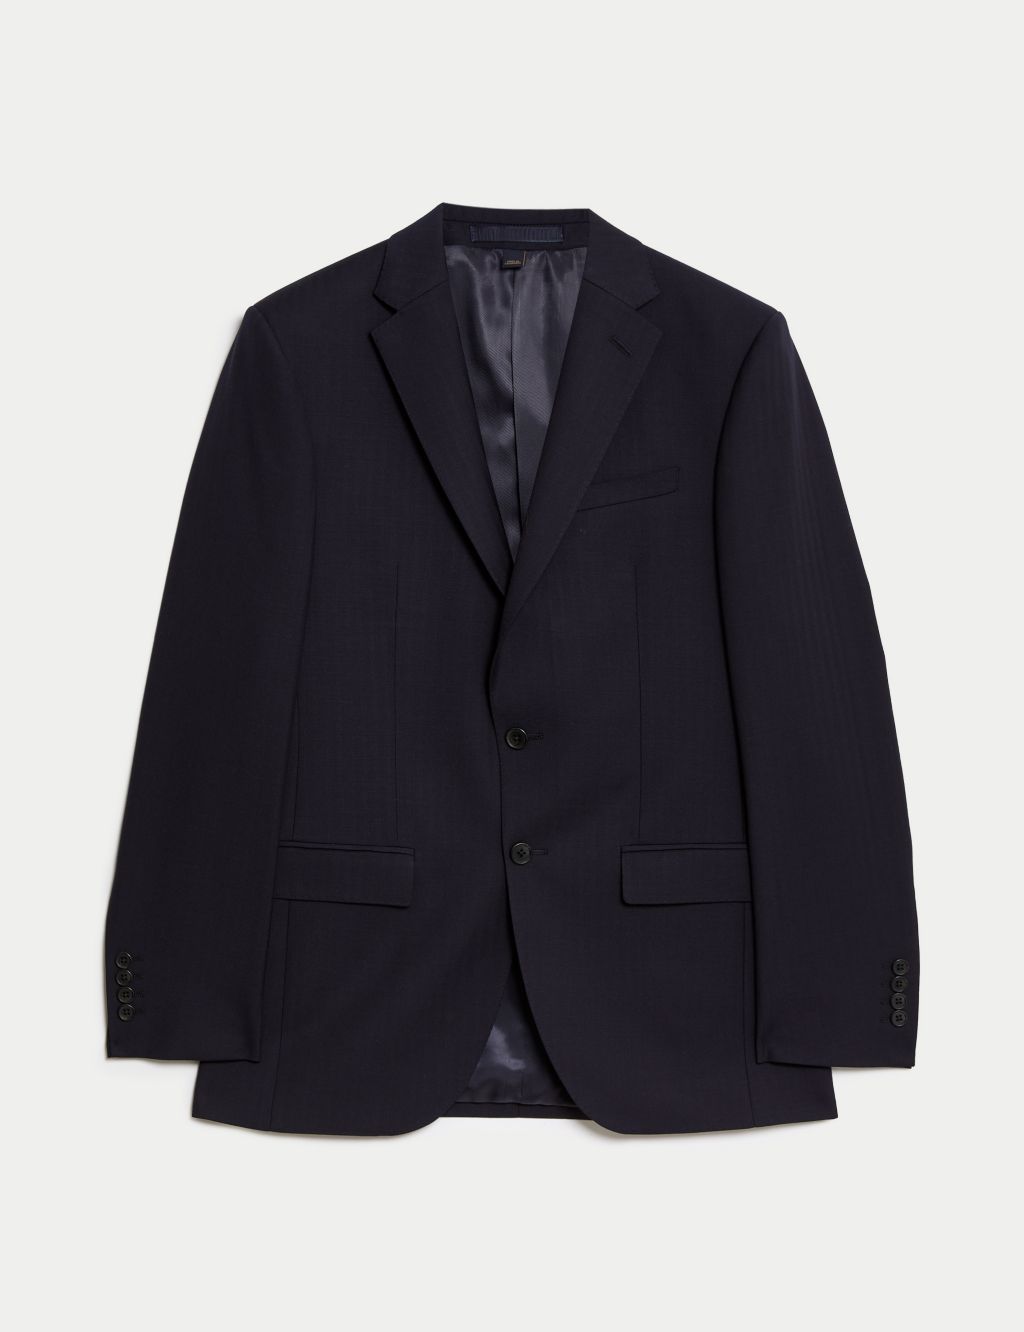 Slim Fit Pure Wool Herringbone Suit Jacket image 1